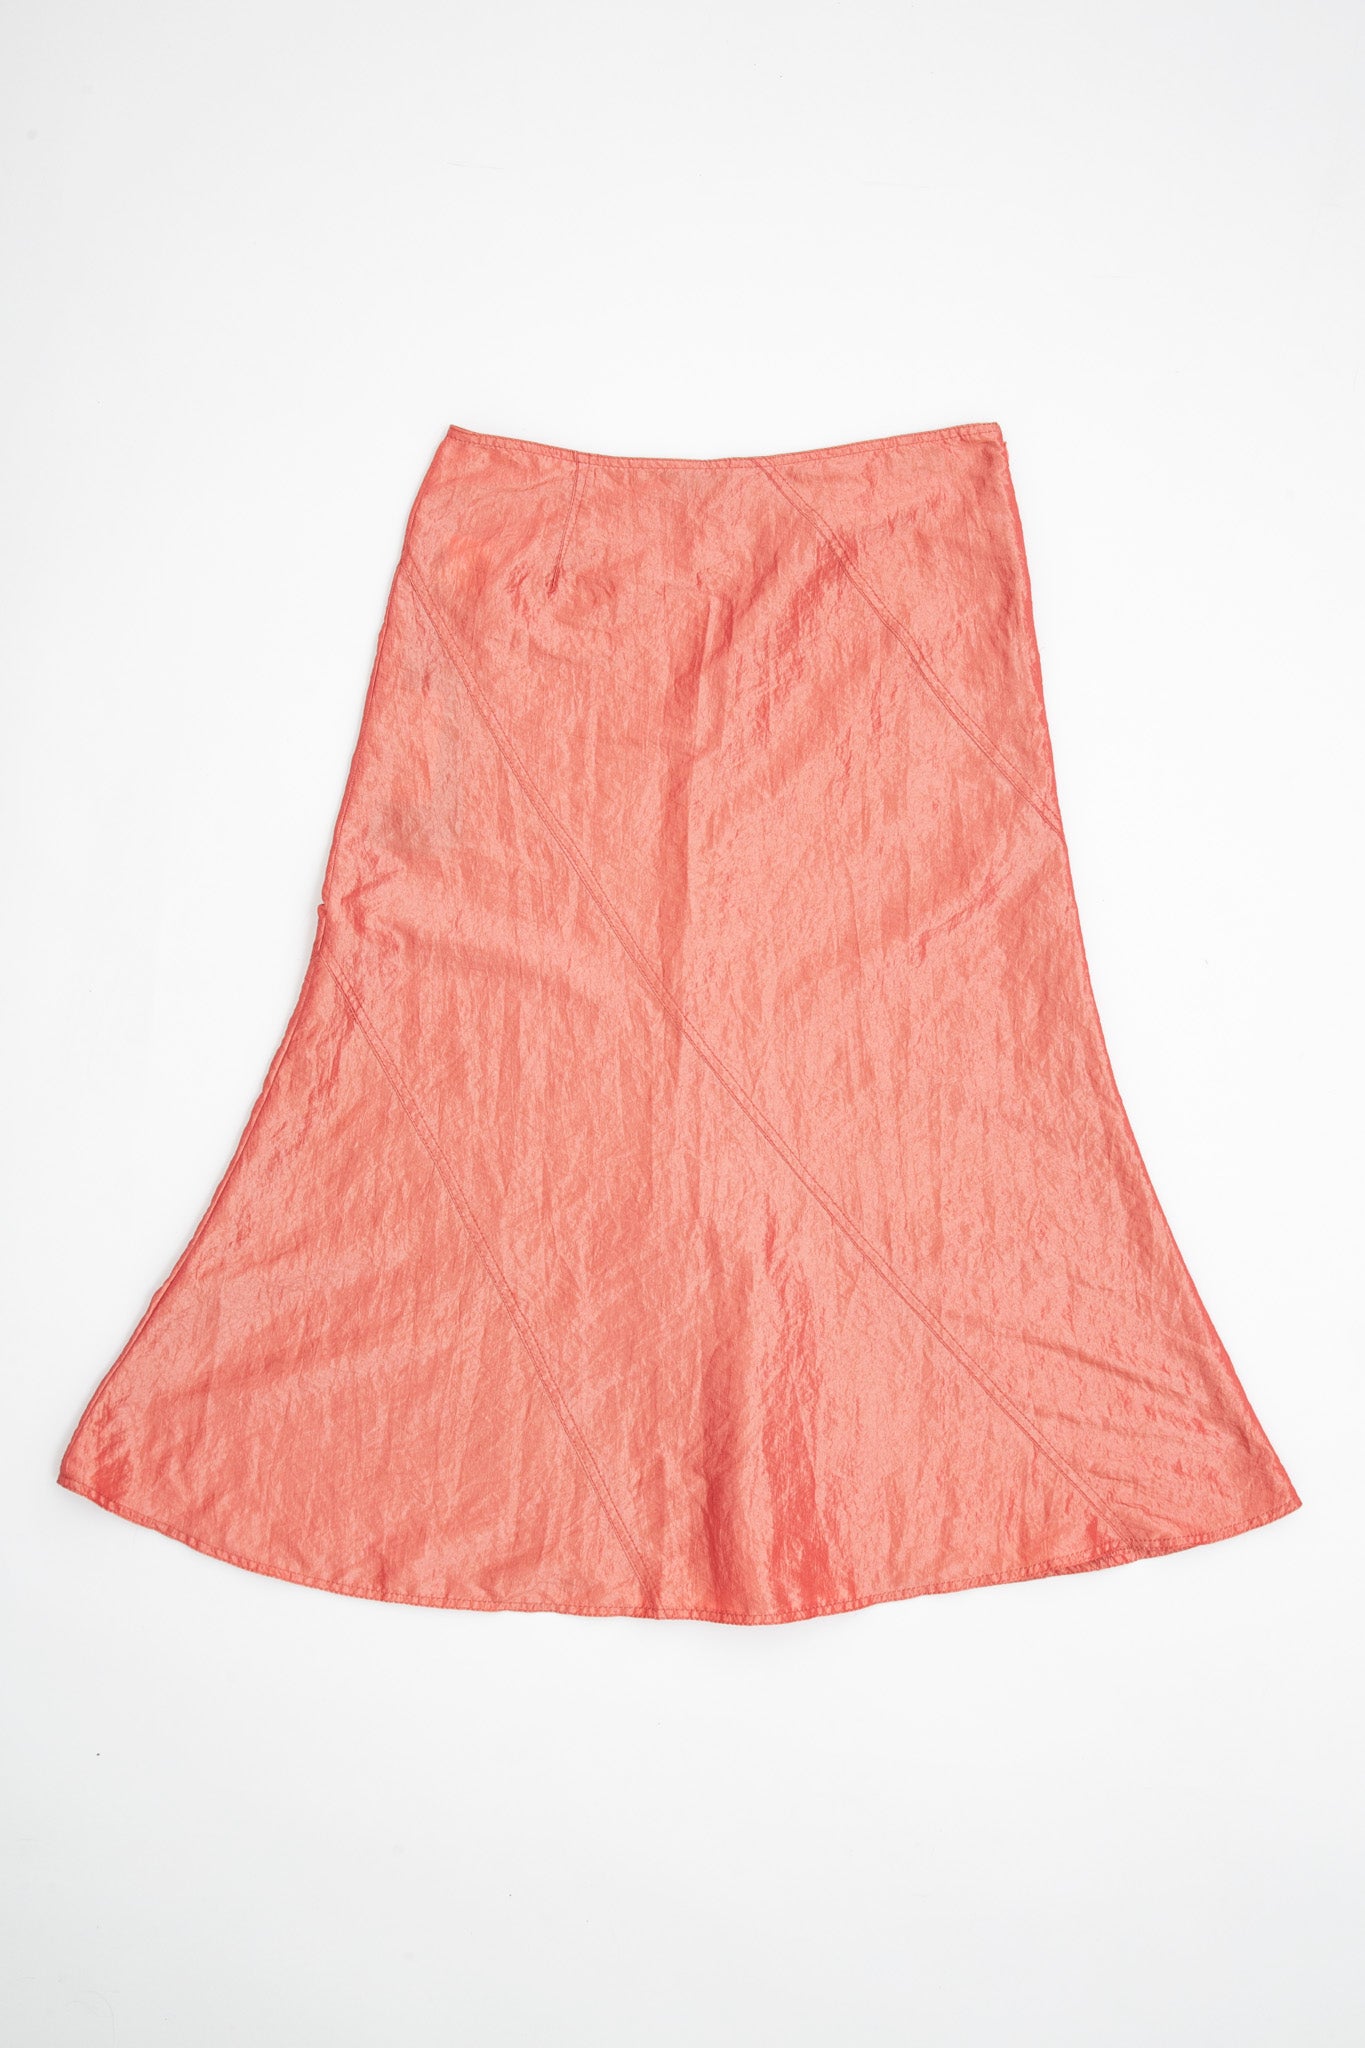 Mariella Burani Iridescent Skirt